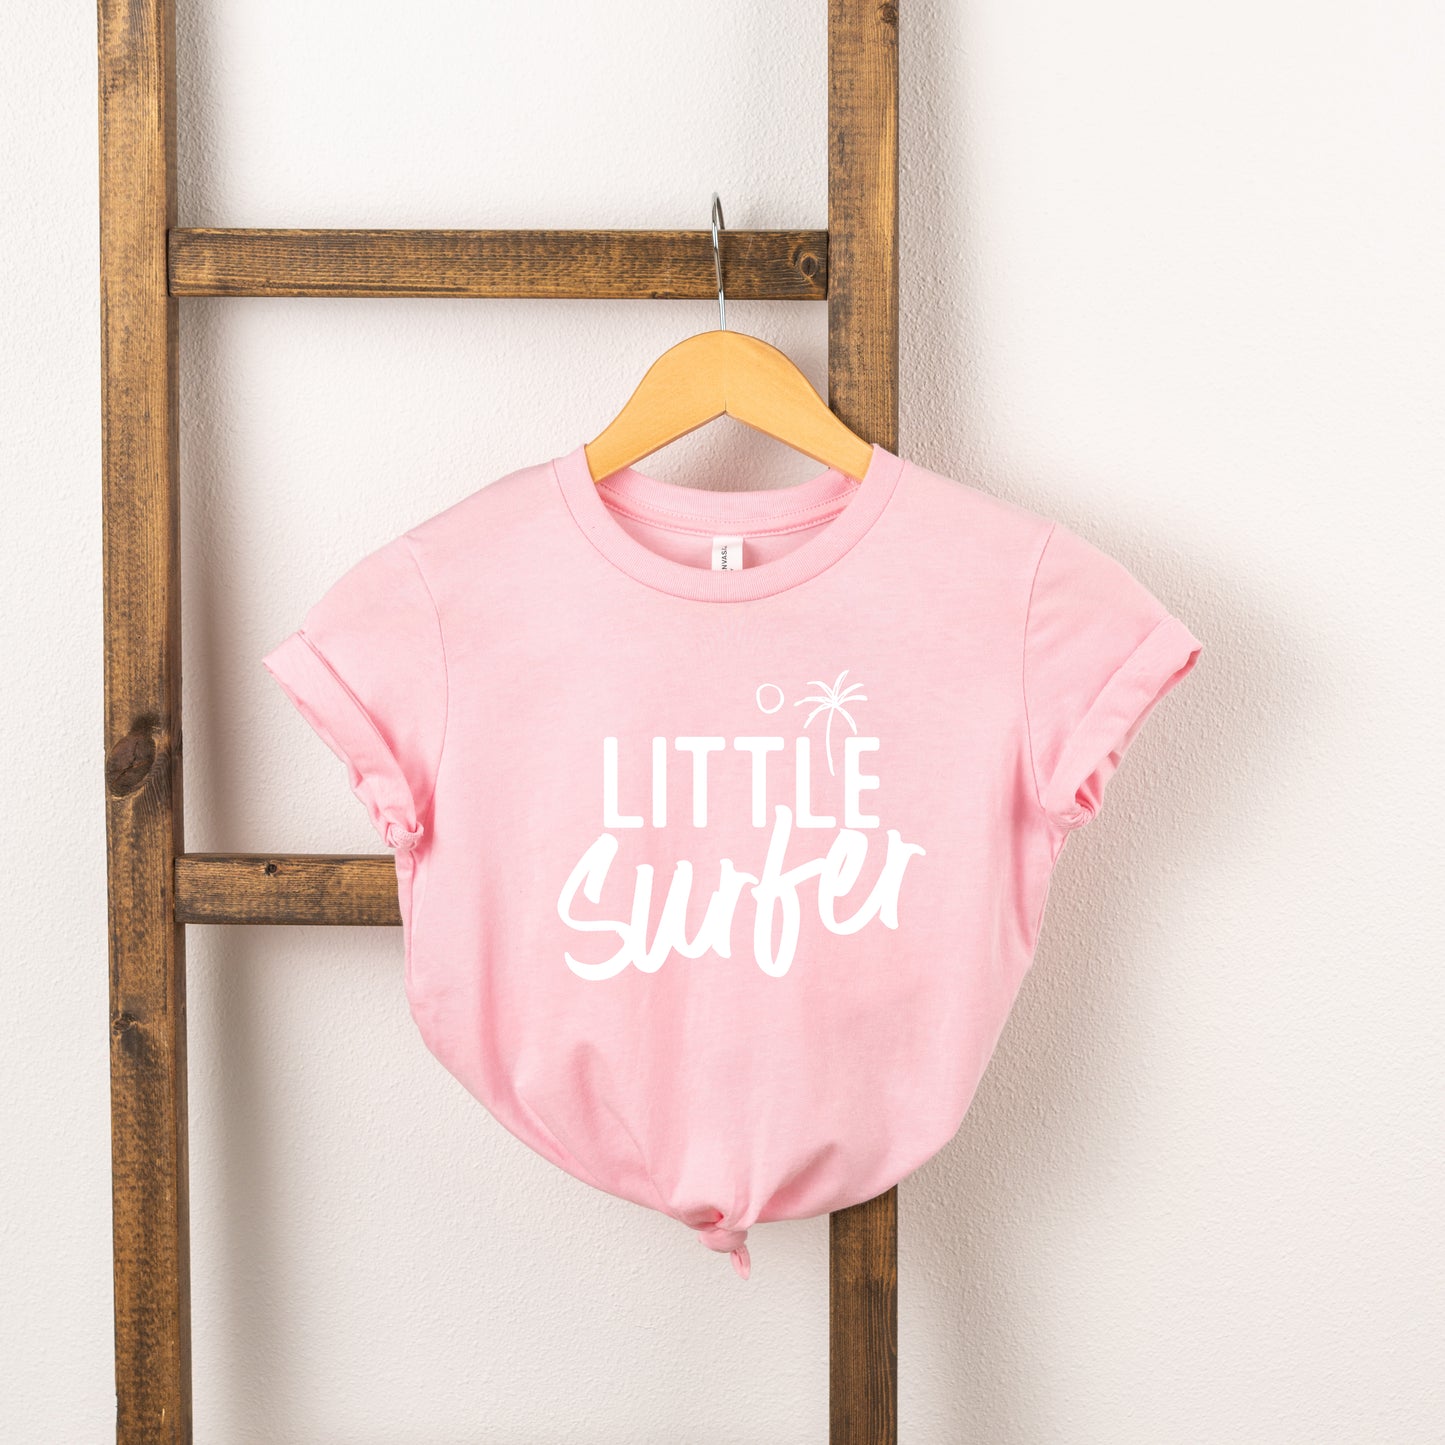 Little Surfer | Toddler Short Sleeve Crew Neck